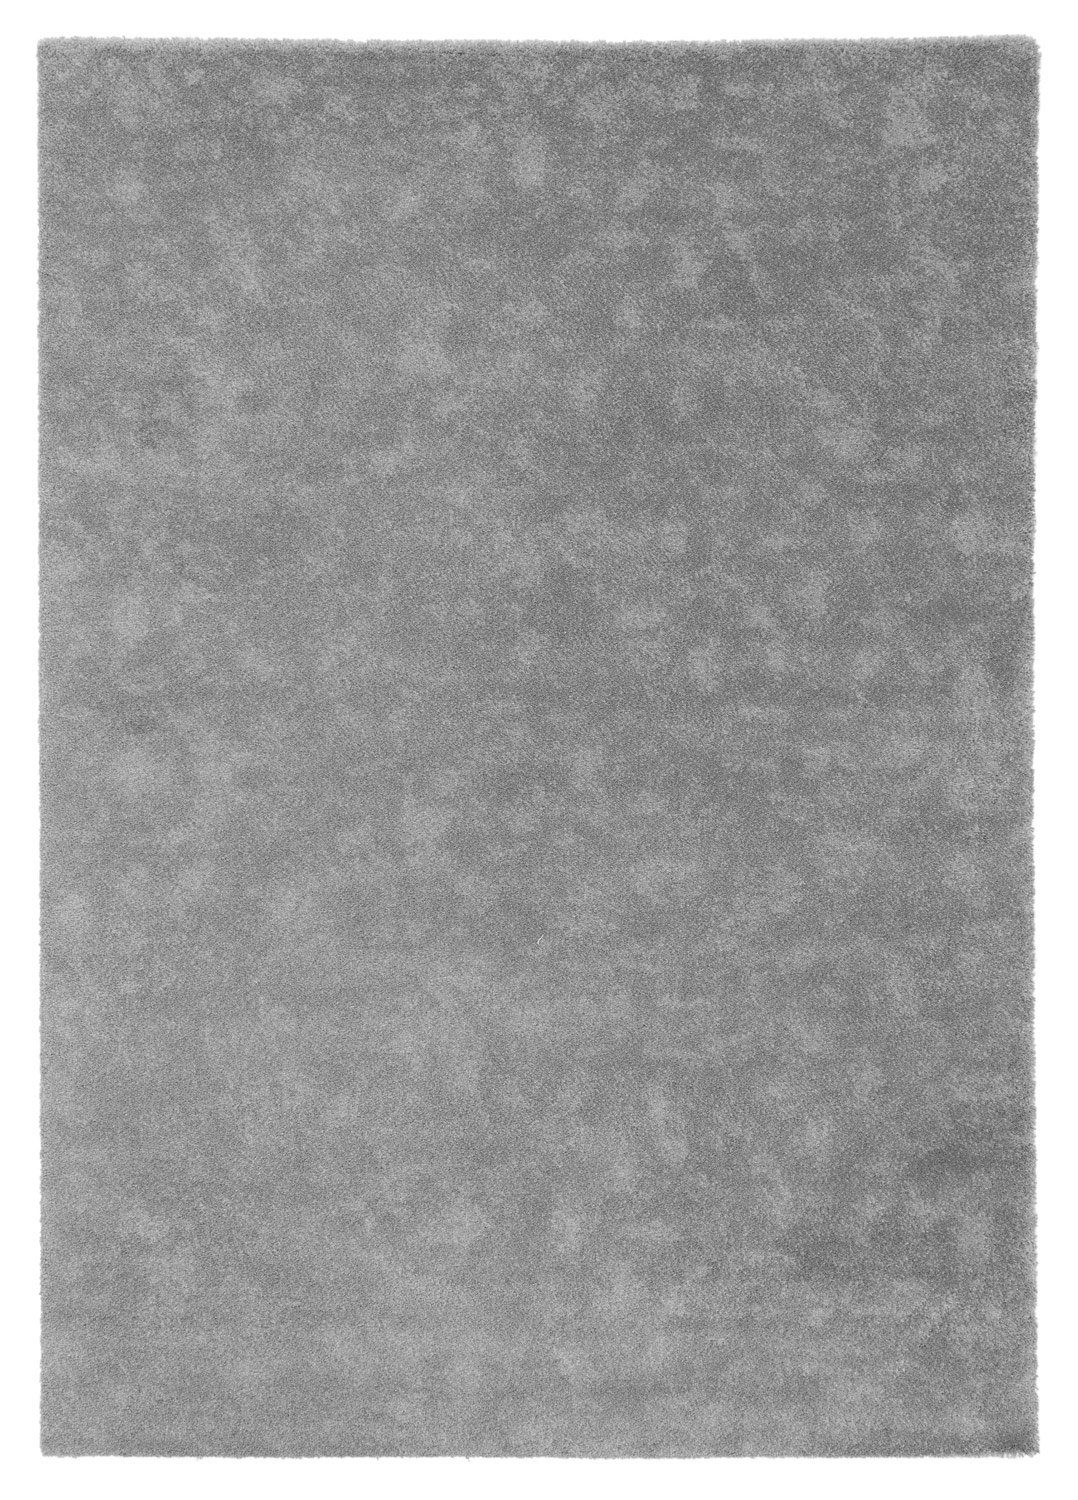 Teppich MOON, Polypropylen, Grau, 80 x 150 cm, Unifarben, Balta Rugs, rechteckig, Höhe: 17 mm